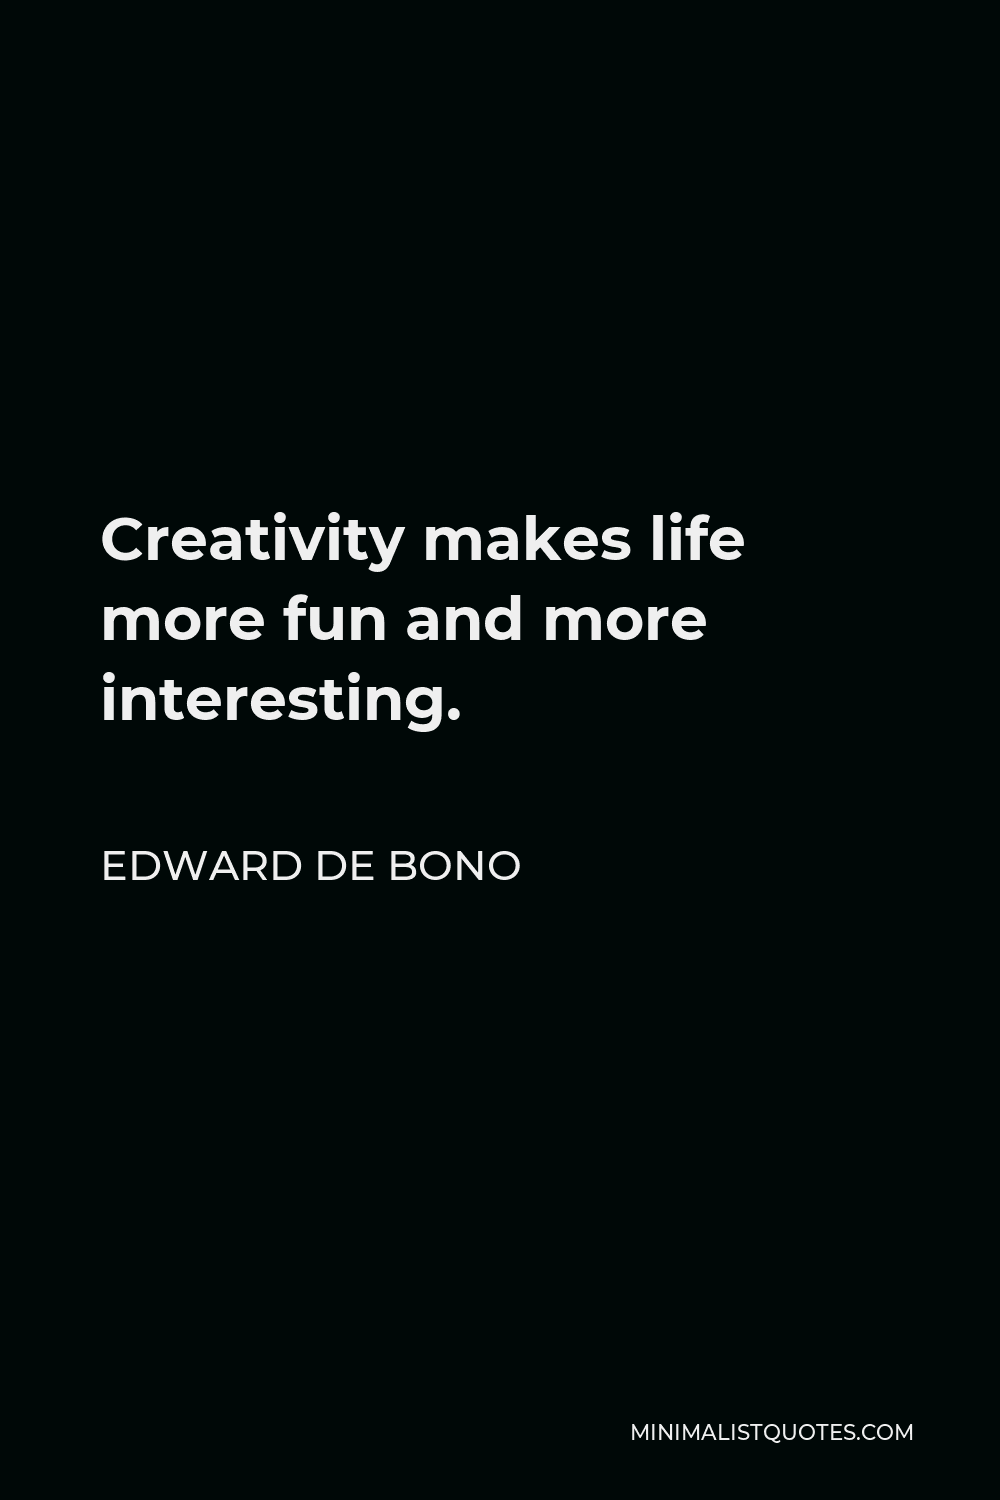 Edward de Bono Quote - Creativity makes life more fun and more interesting.